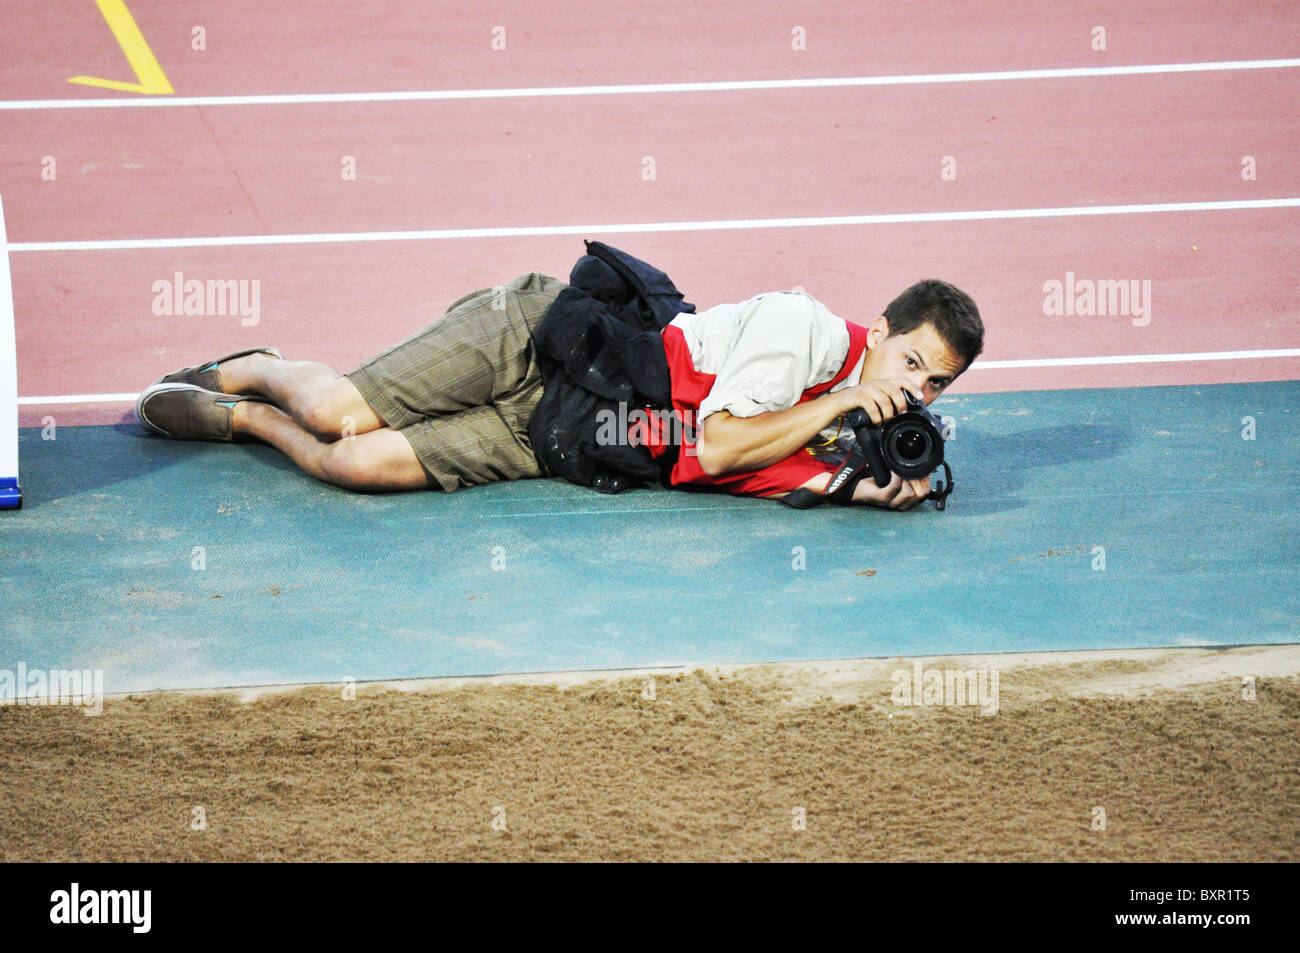 Sport-Fotograf ist Laing unten auf der Laufstrecke Stockfoto